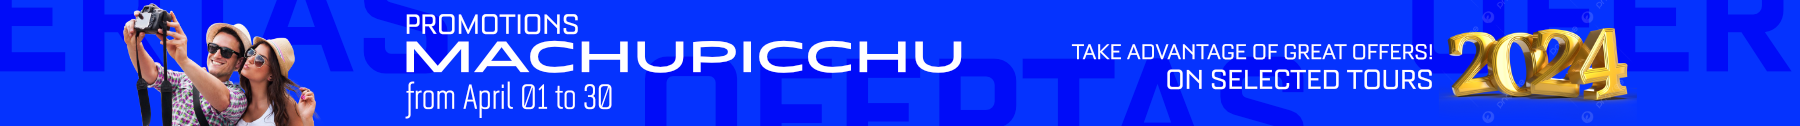 Banner grande Machupicchu